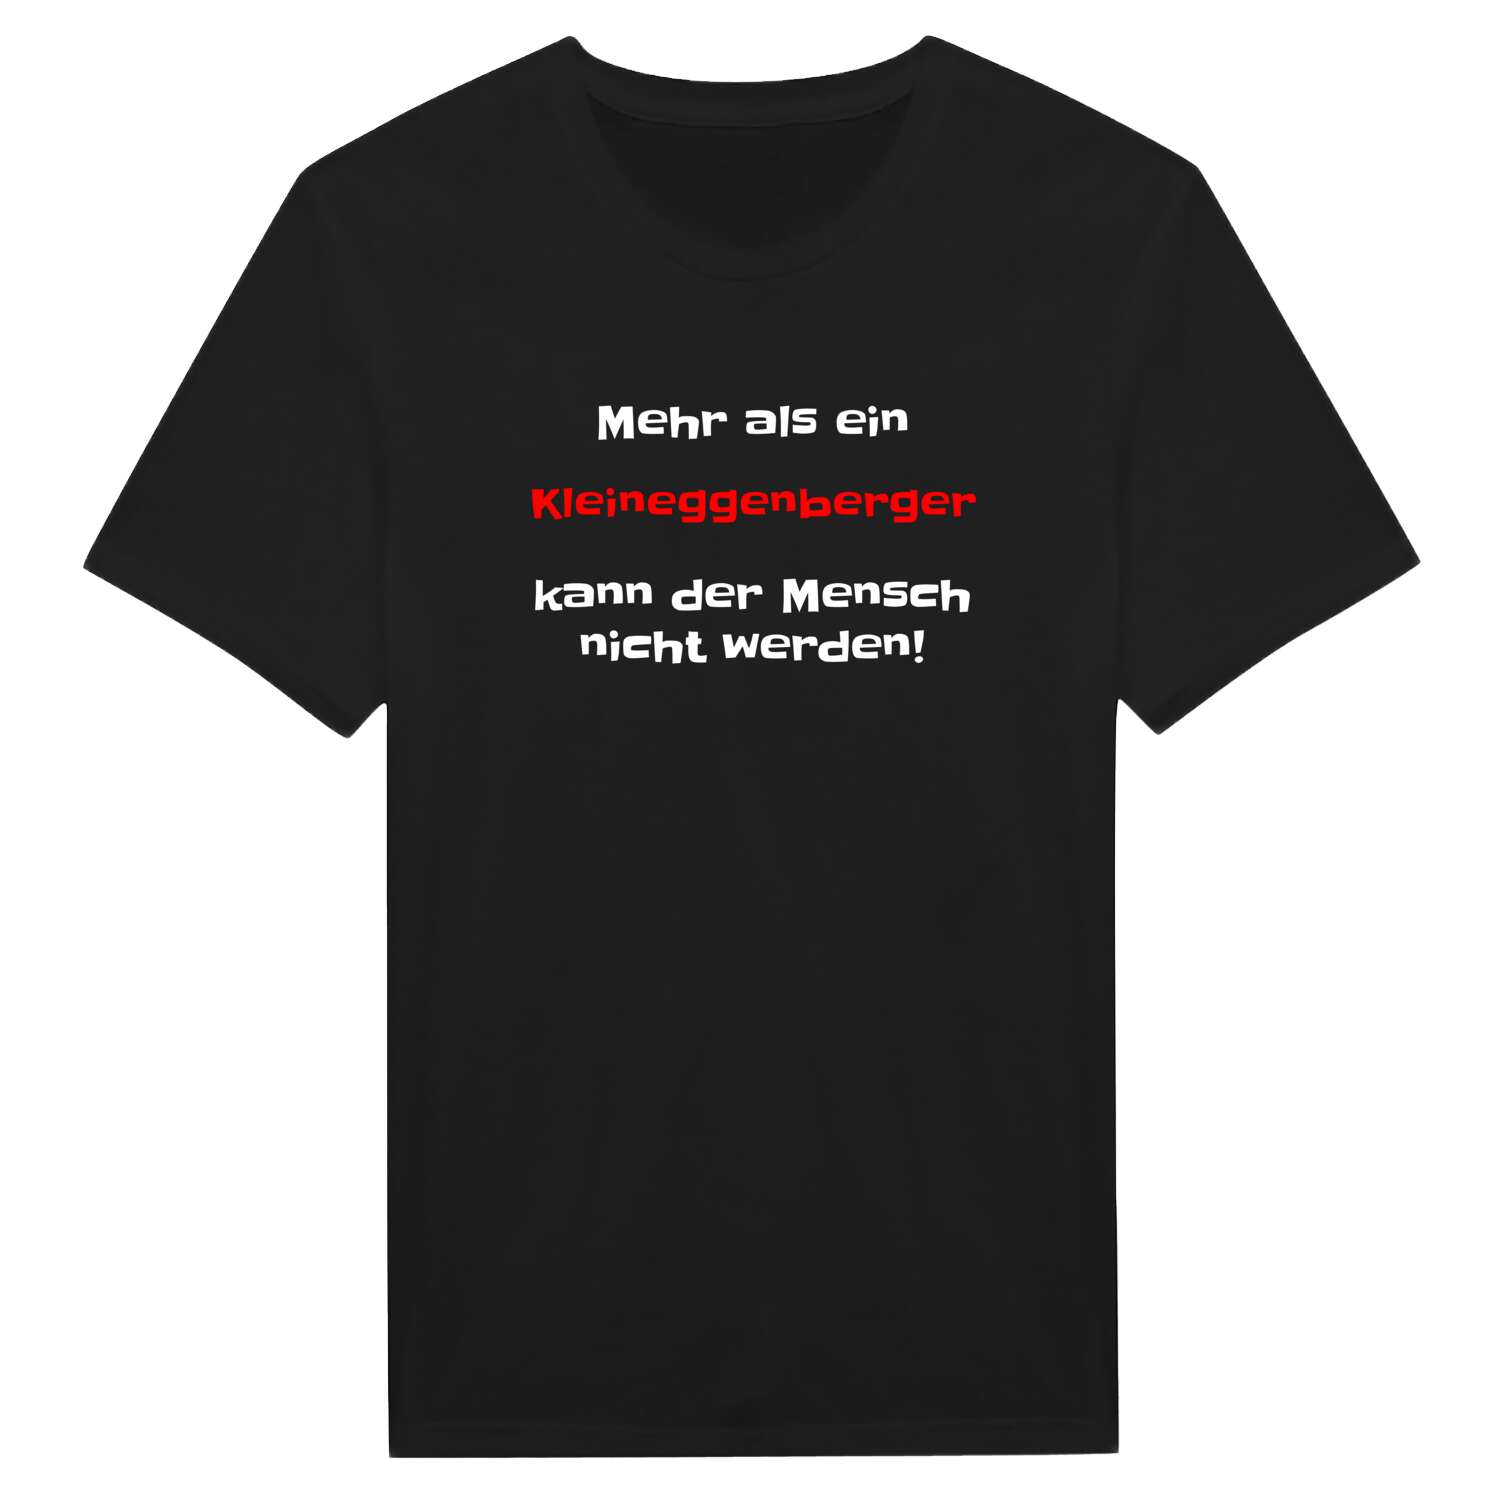 Kleineggenberg T-Shirt »Mehr als ein«